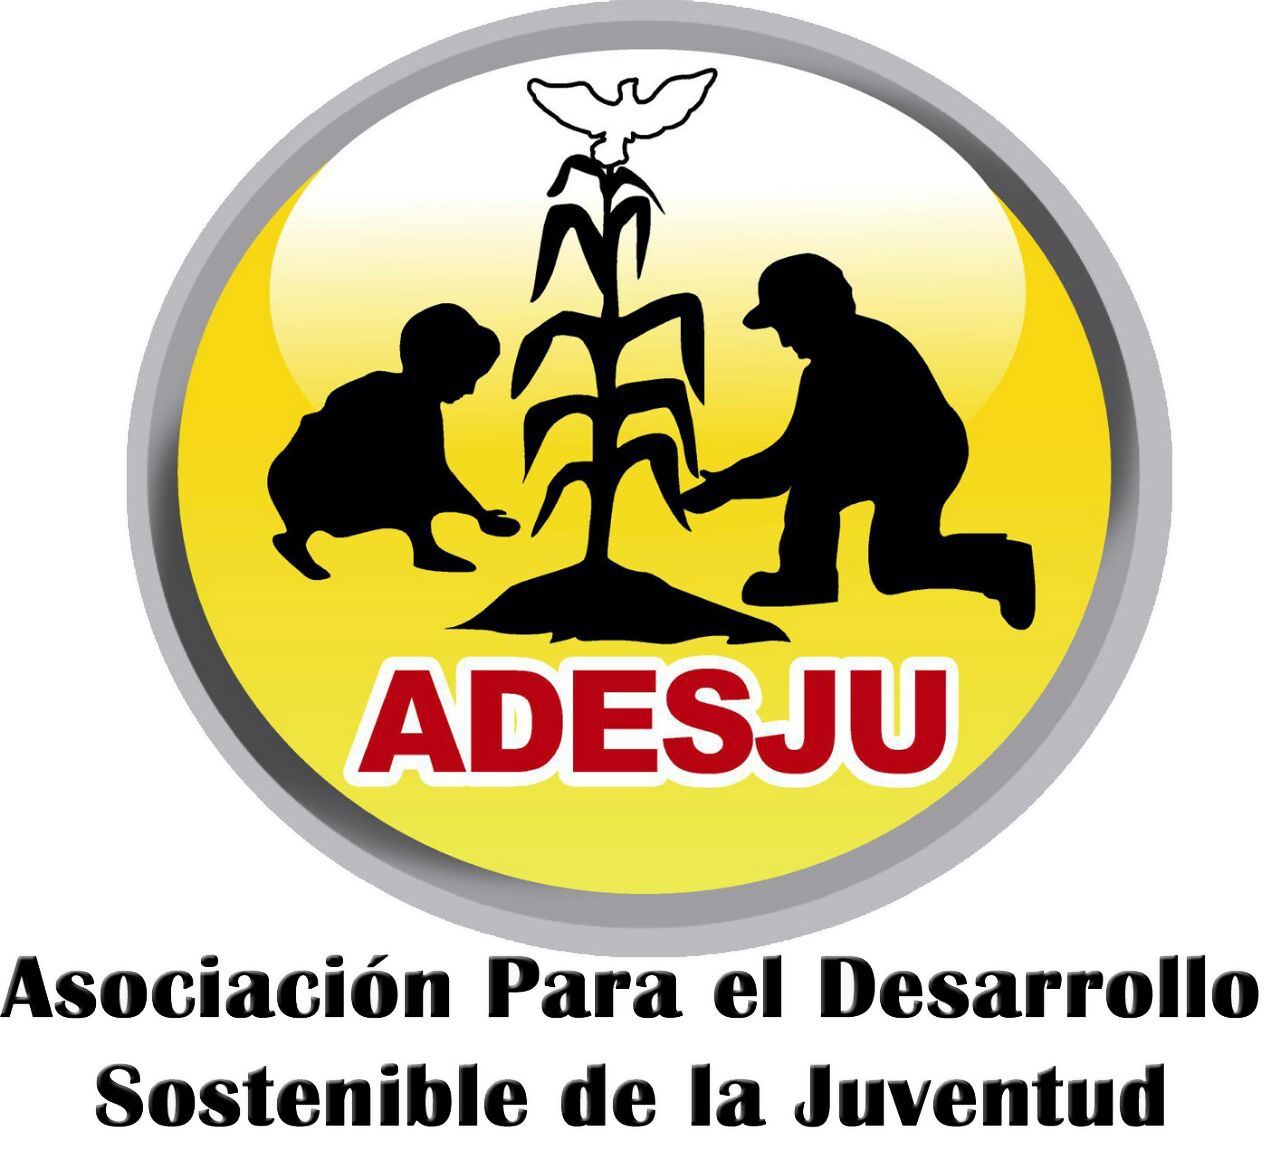 Asociación Para el Desarrollo Sostenible de la Juventud -ADESJU-